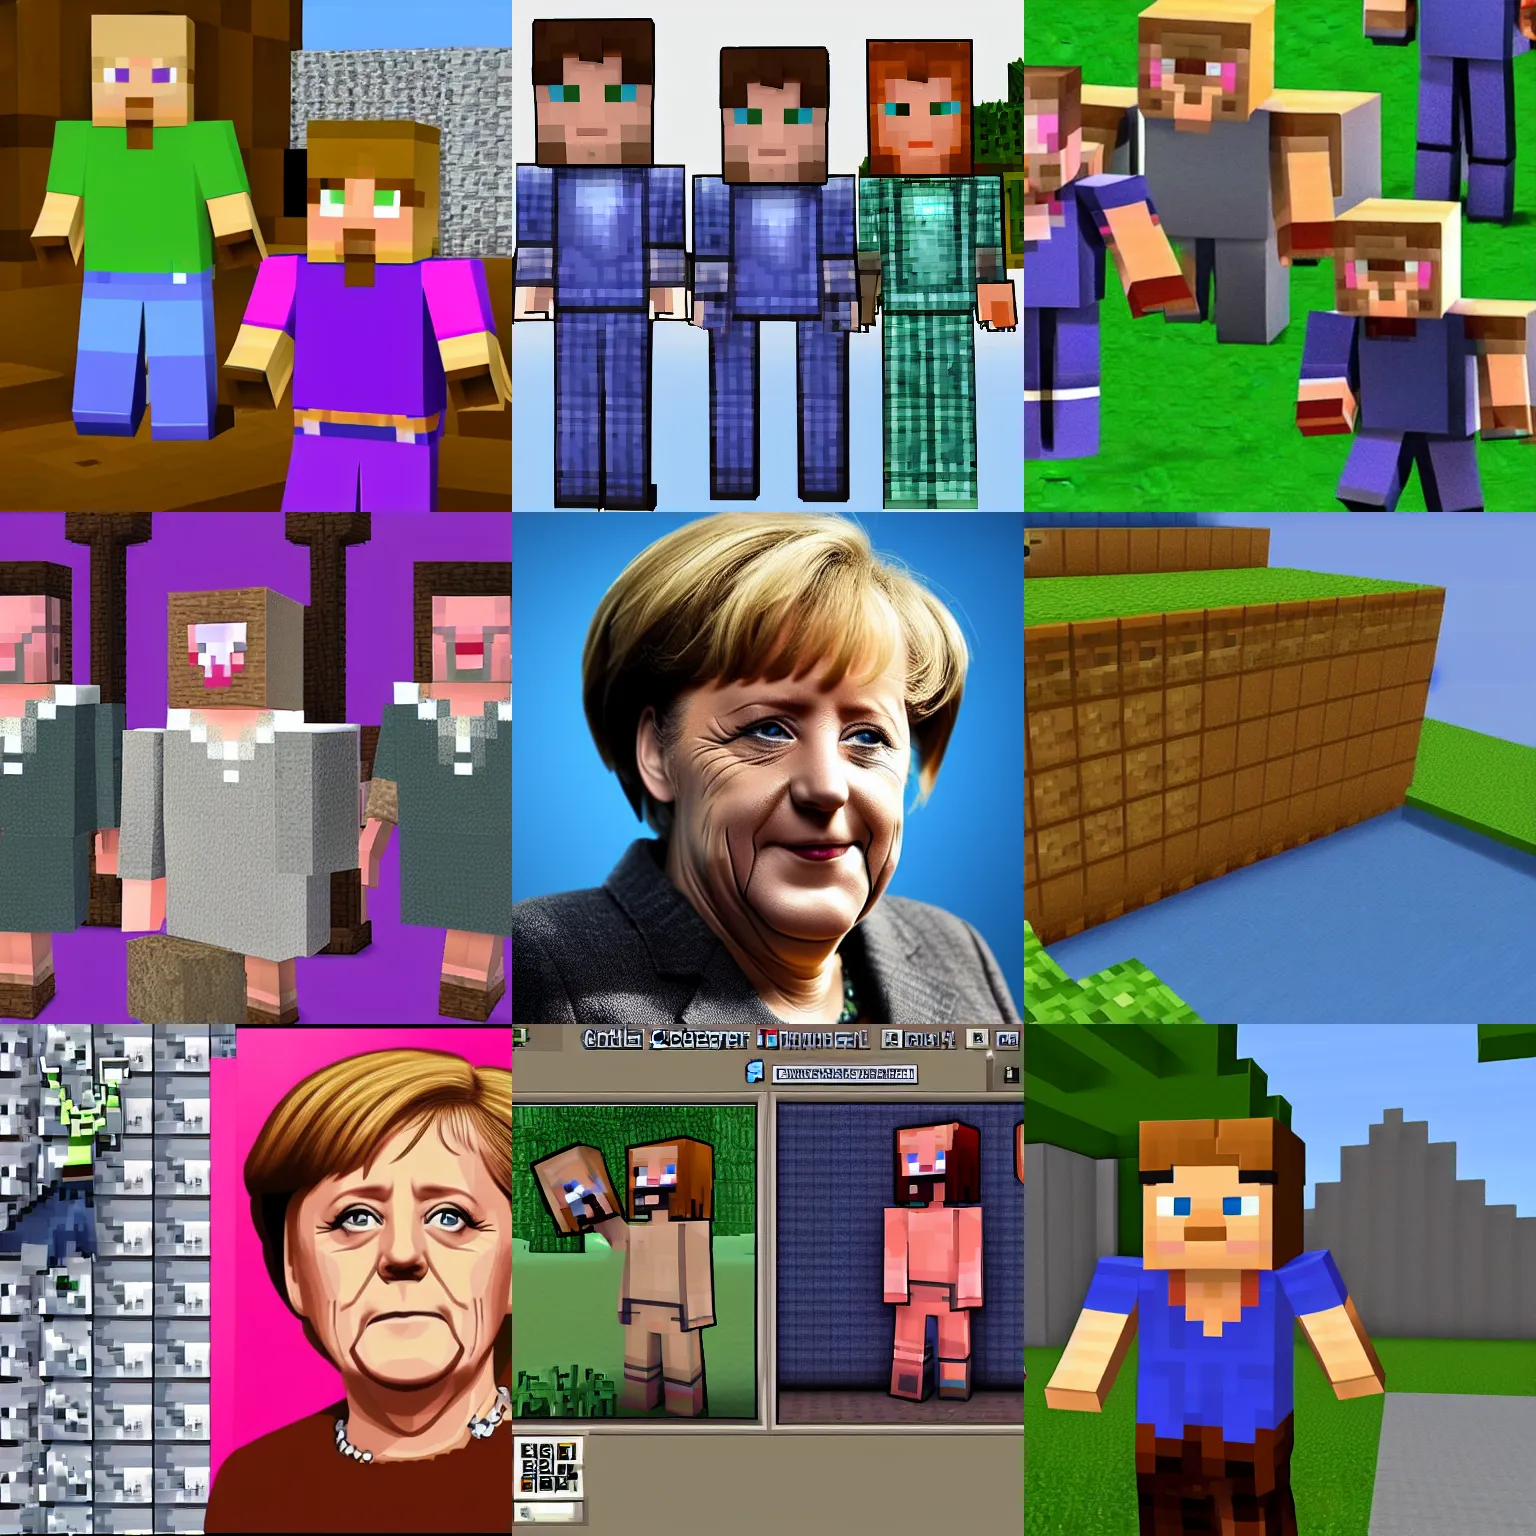 Prompt: Angela Merkel minecraft skin